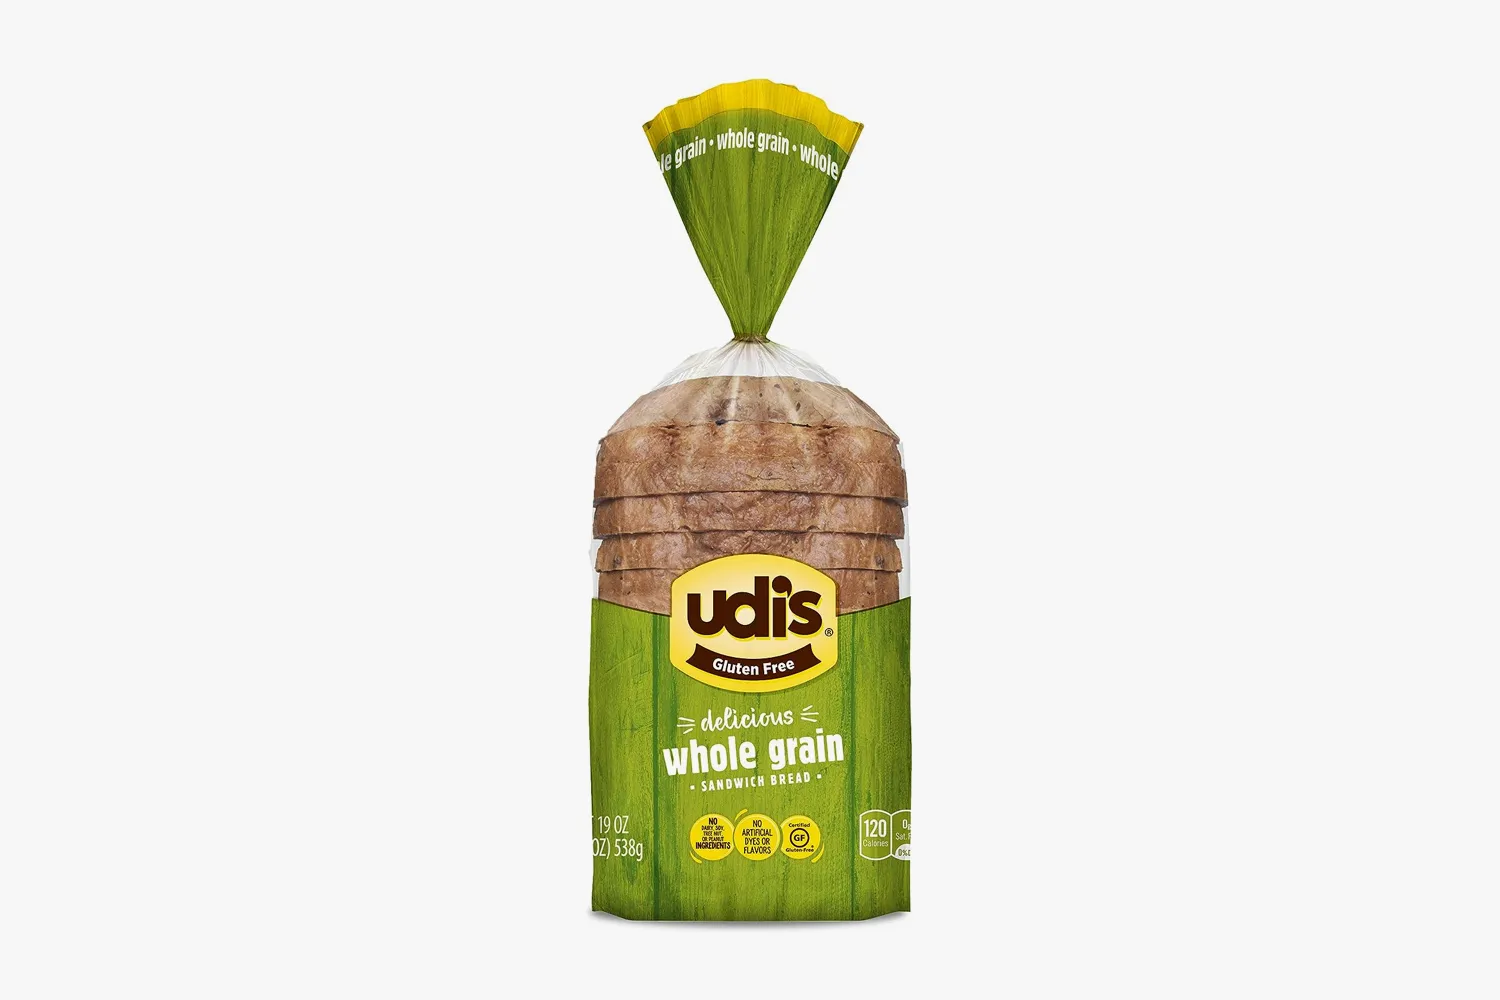 Udi’s Gluten-Free Whole Grain Bread